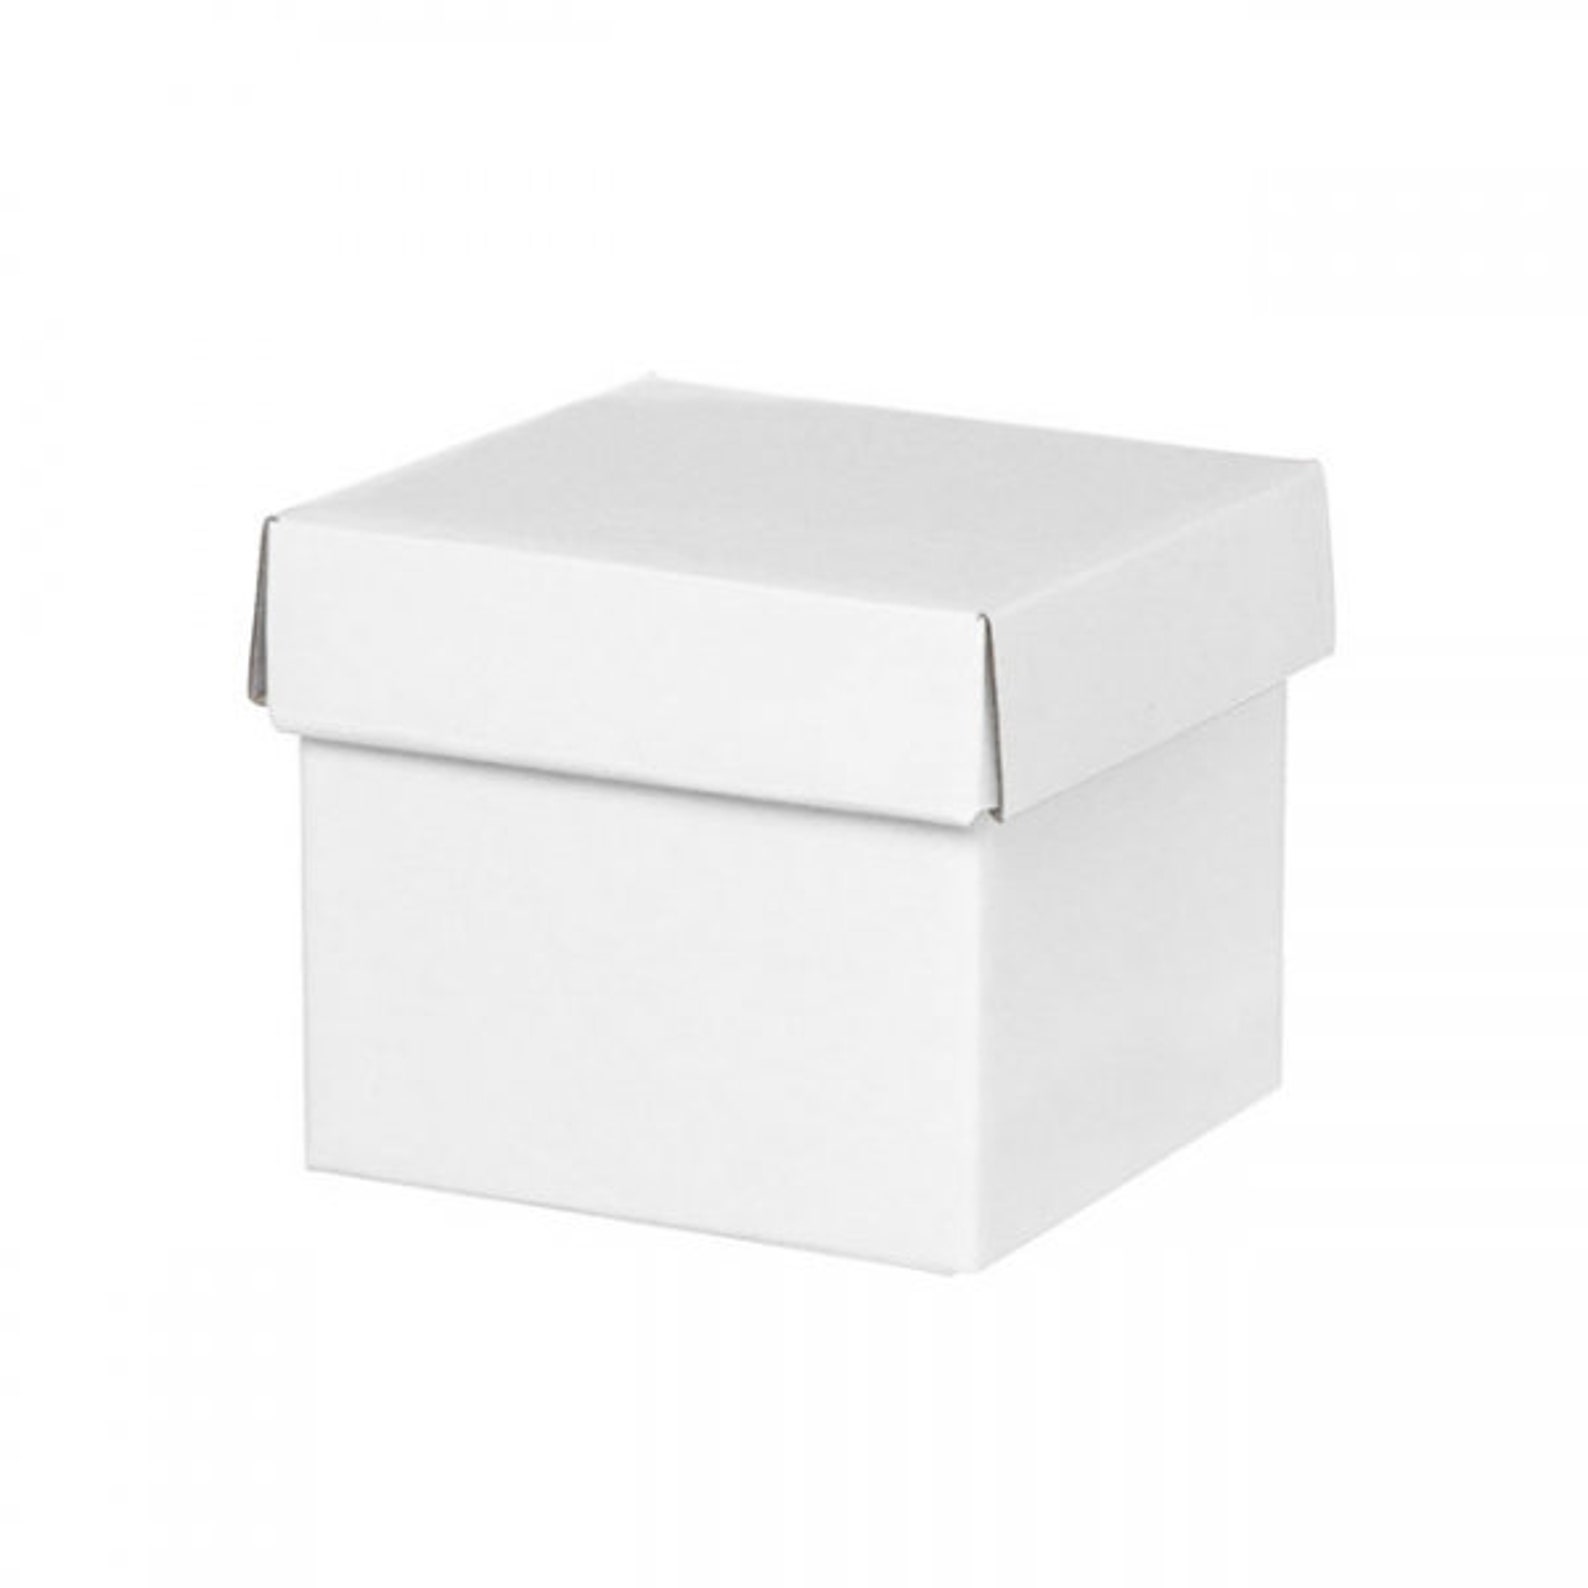 5 pequeñas cajas de regalo blancas con tapas 13x12cm etsy